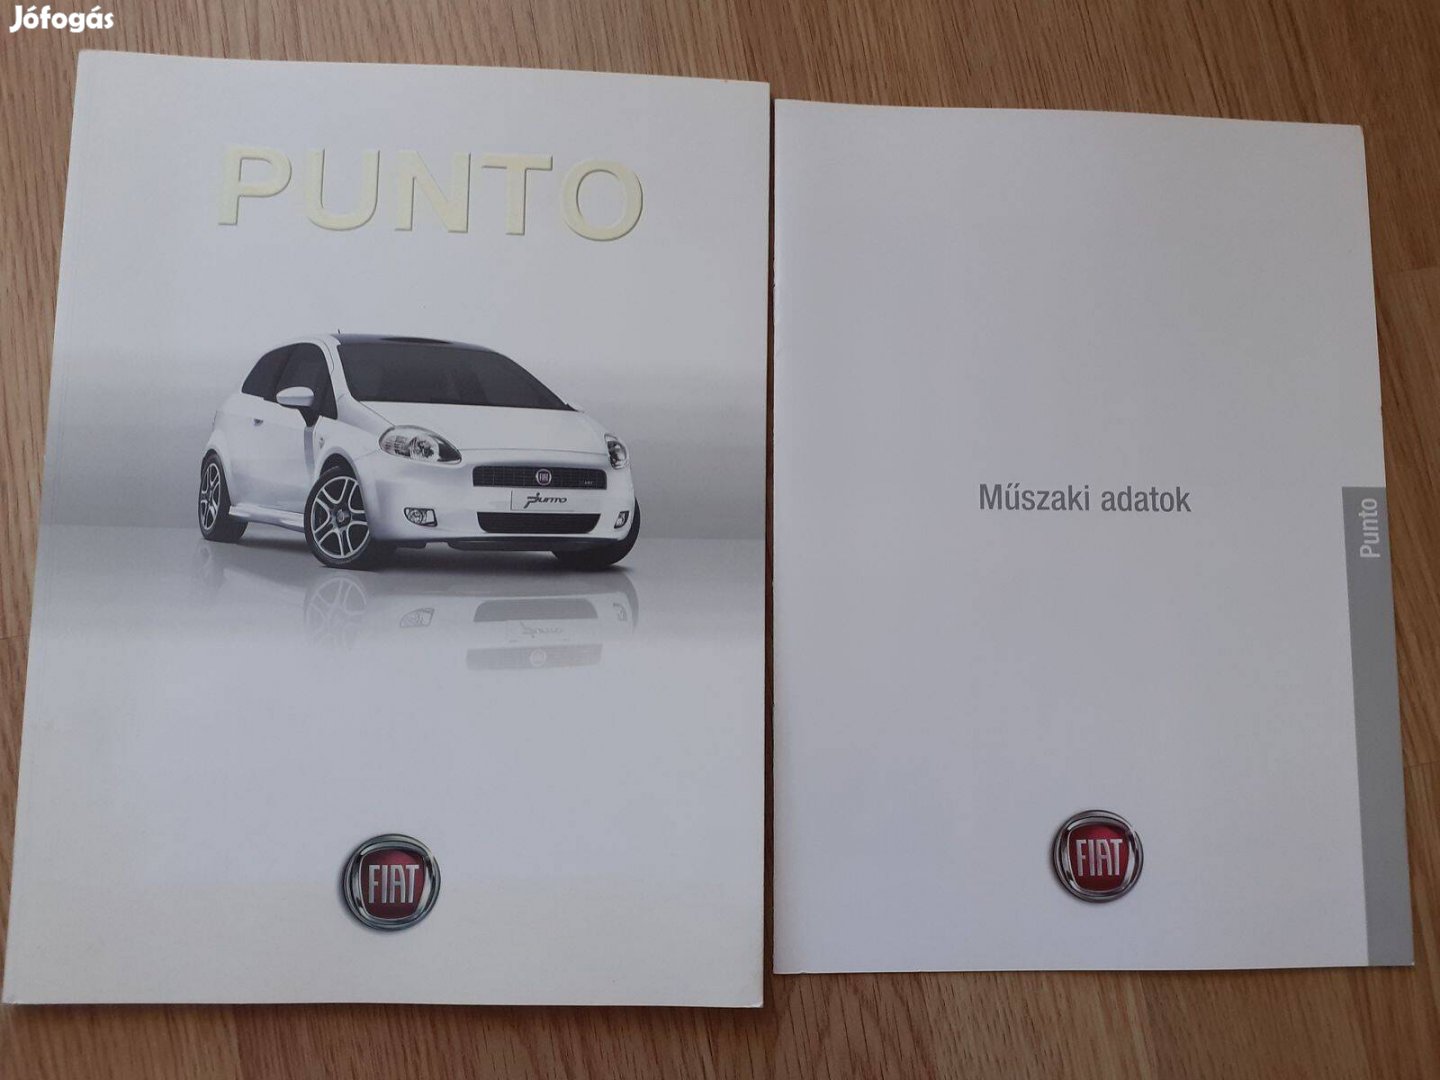 Fiat Punto prospektus - 2008, magyar nyelvű